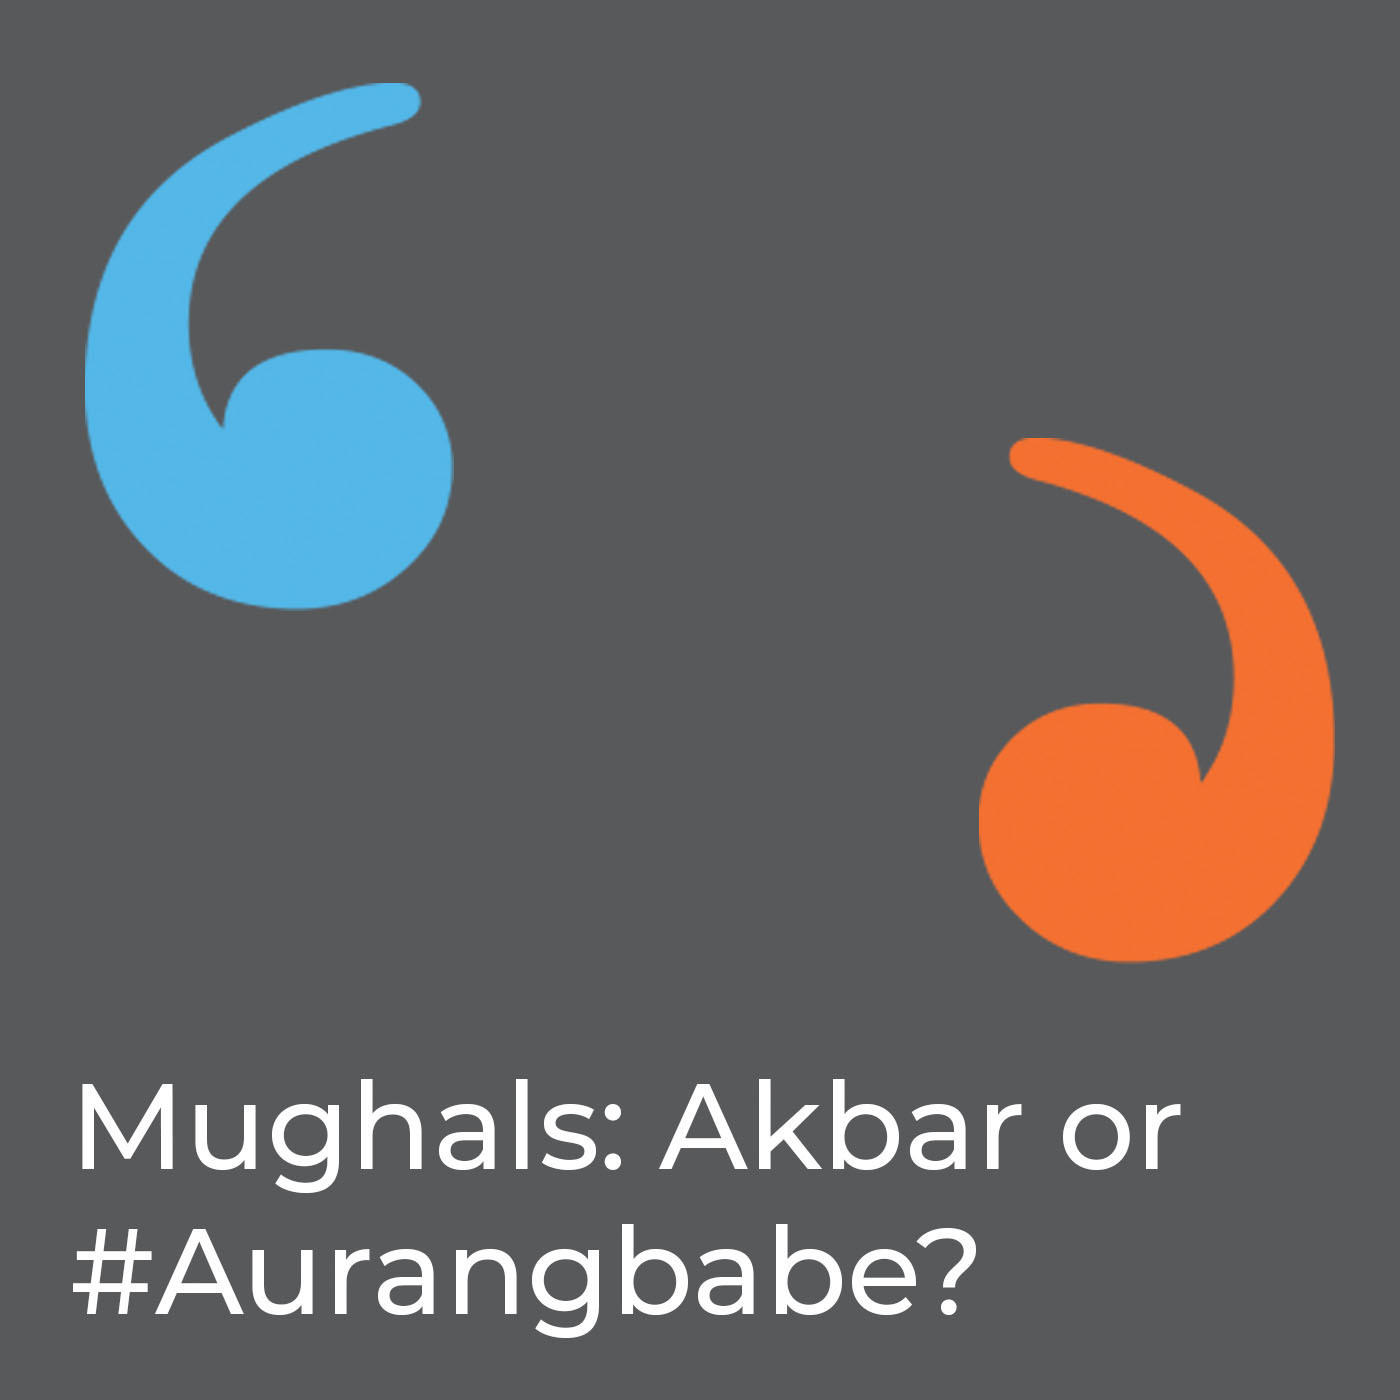 Mughals: Akbar or #Aurangbabe?